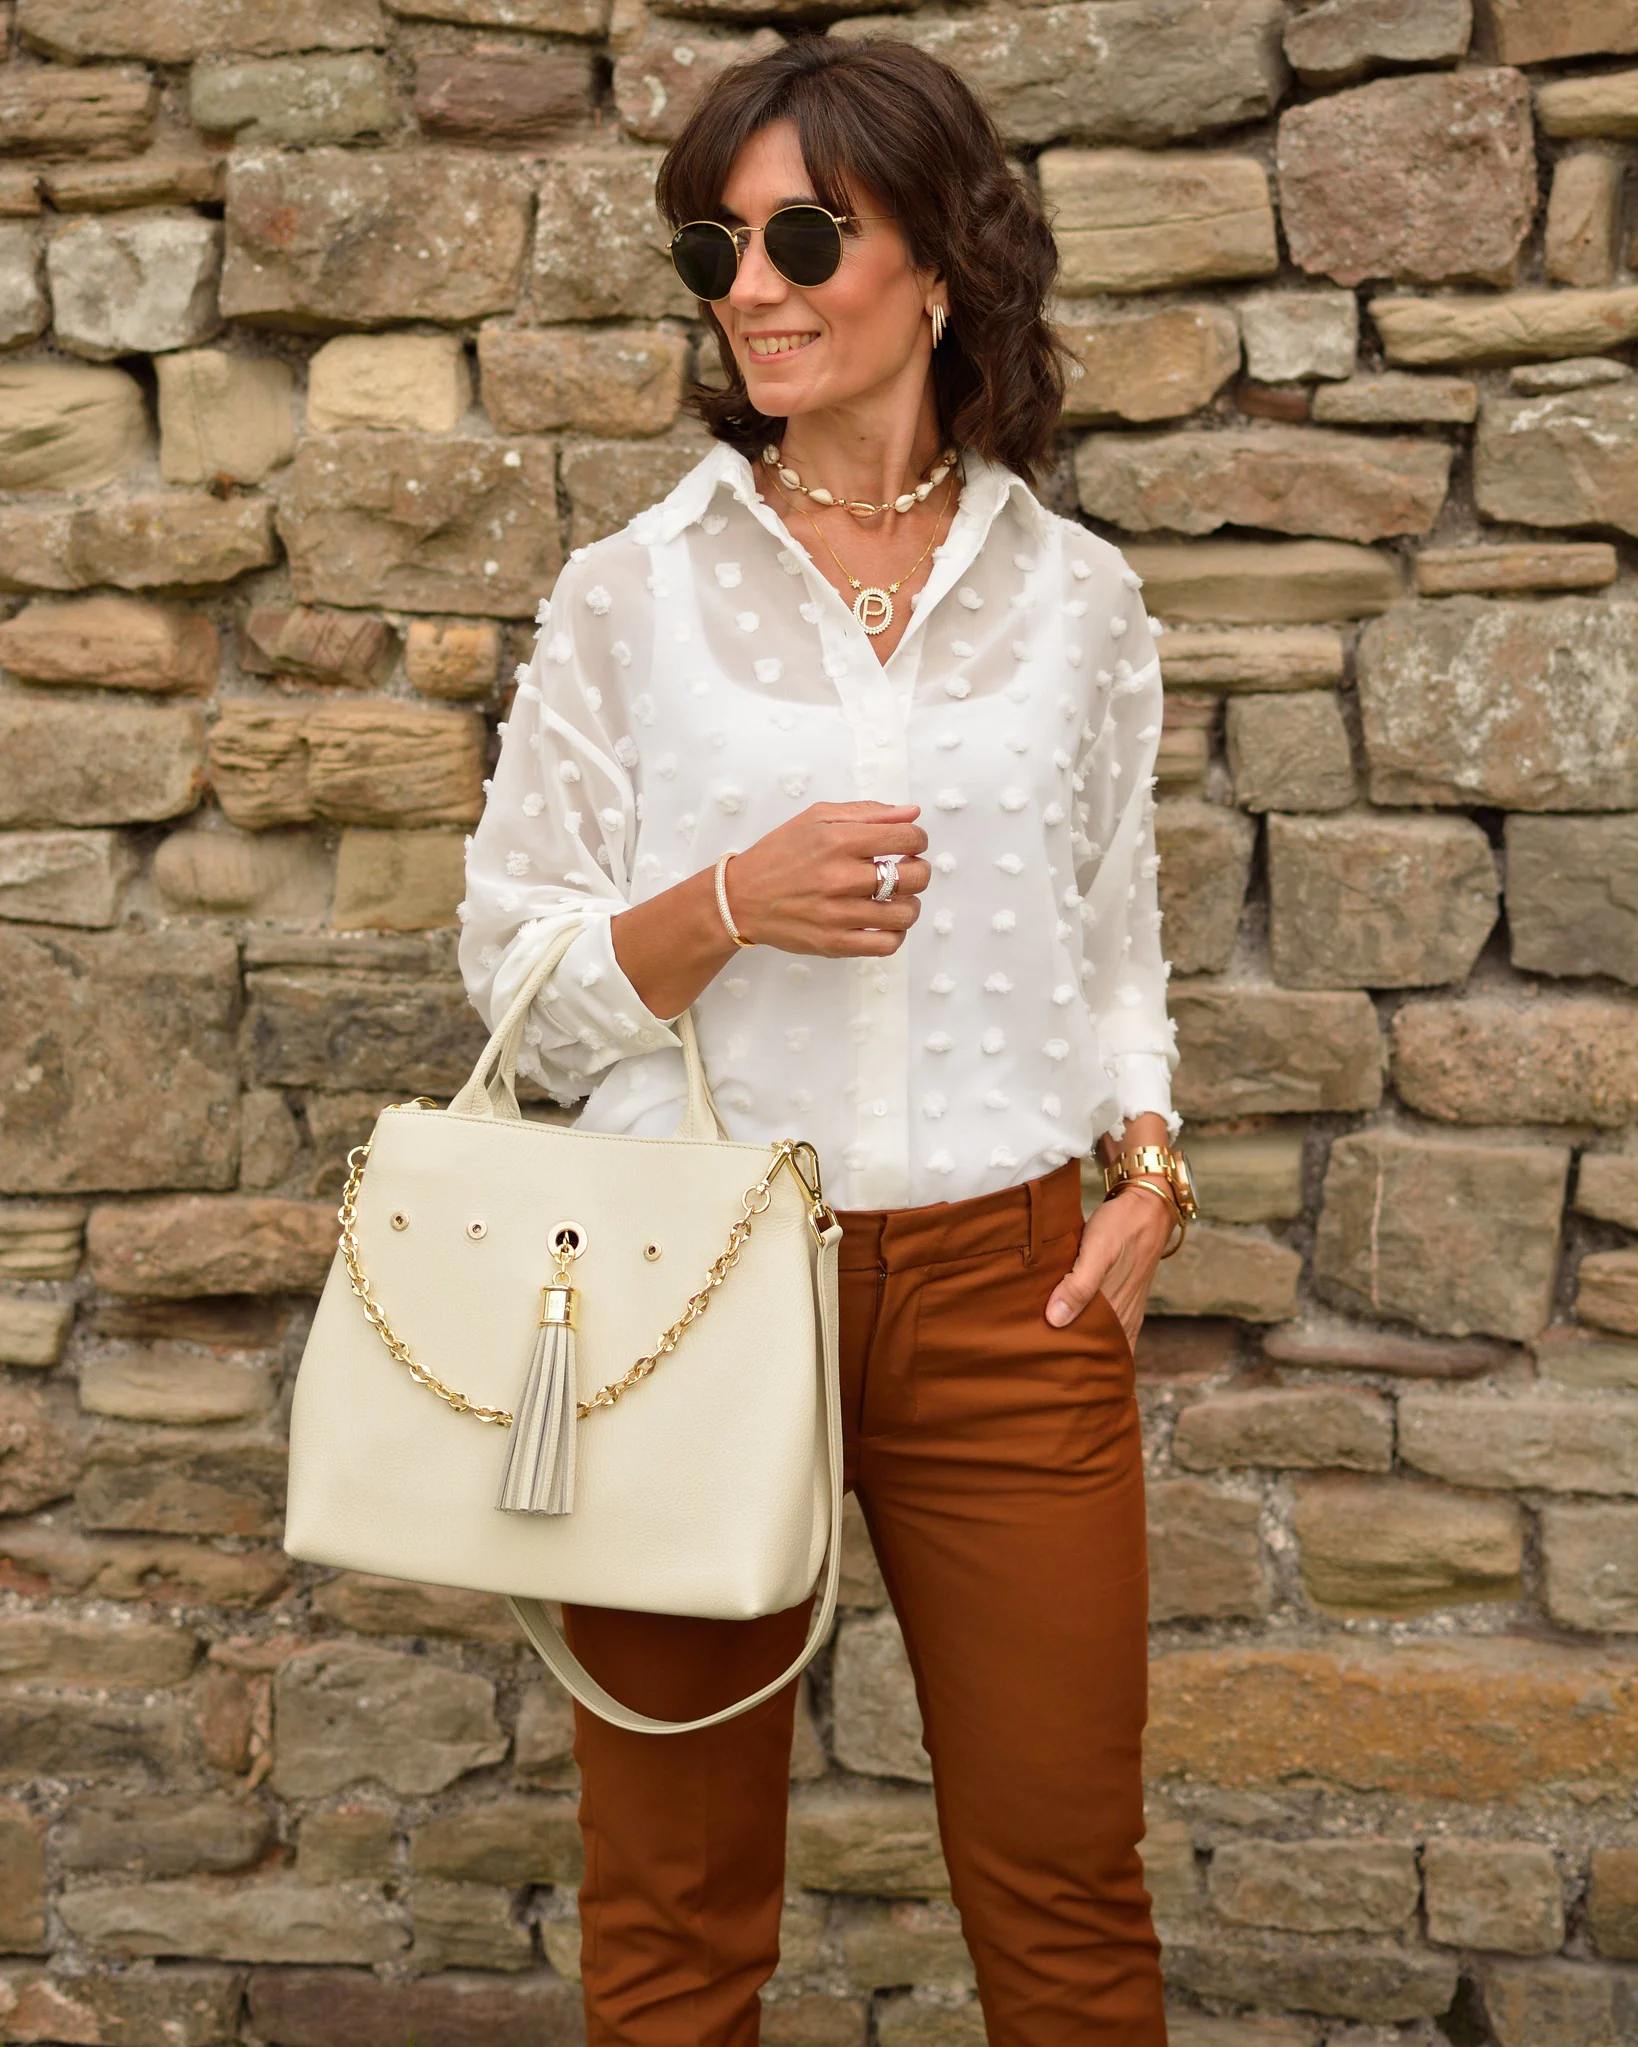 Alessandra de Osma y Patricia Pastor han elegido la misma blusa blanca para combinarla de una forma similar